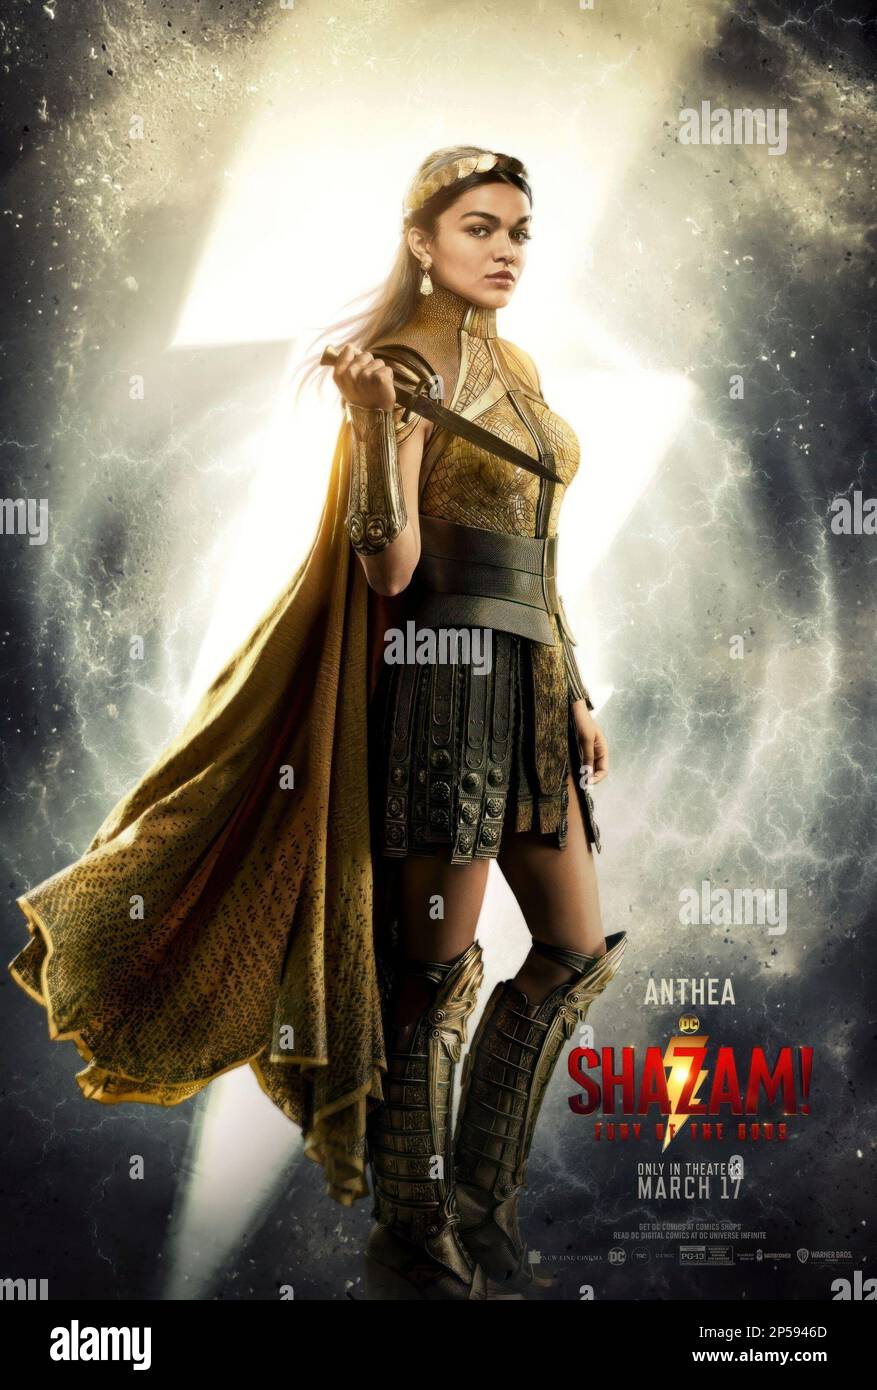 N.J.' s Rachel Zegler is actual goddess in 'Shazam! Fury of the